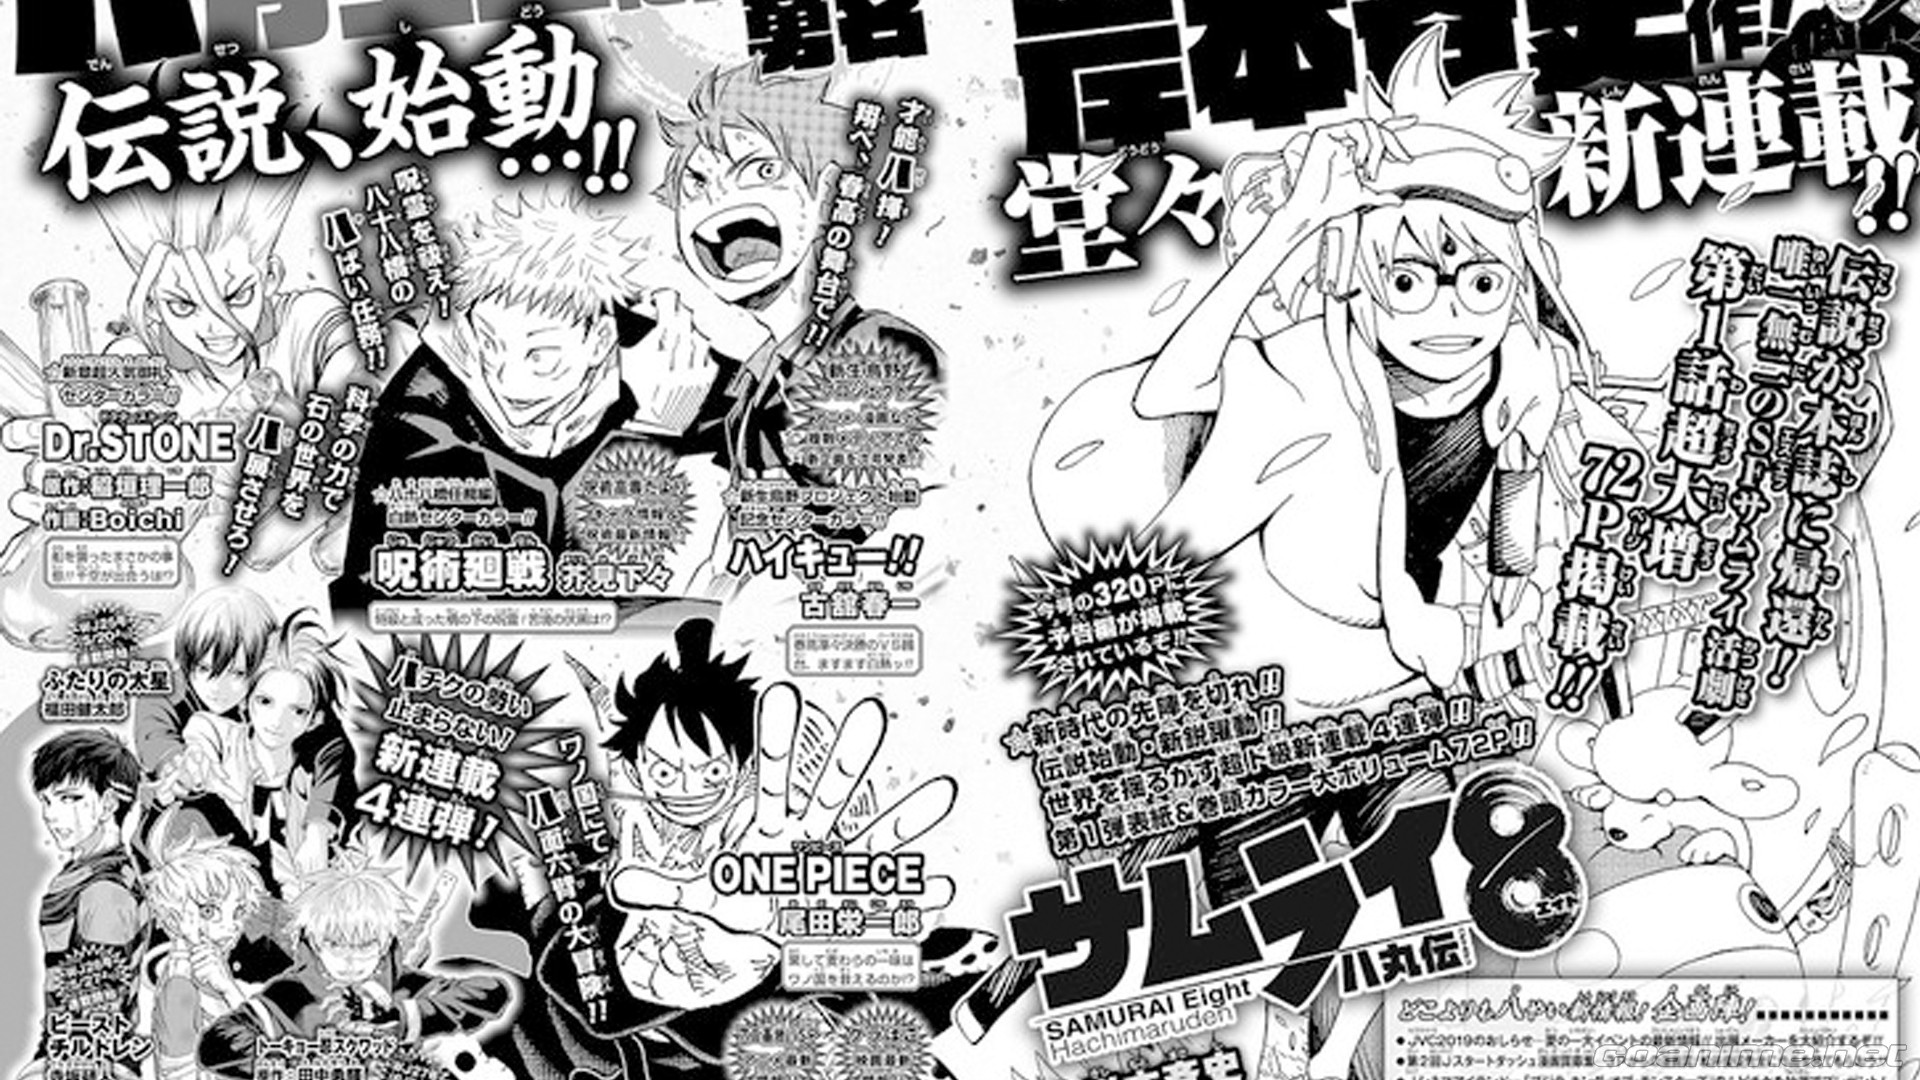 Se lanzarán cuatro nuevos mangas en la revista Weekly Shonen Jump - Coanime.net